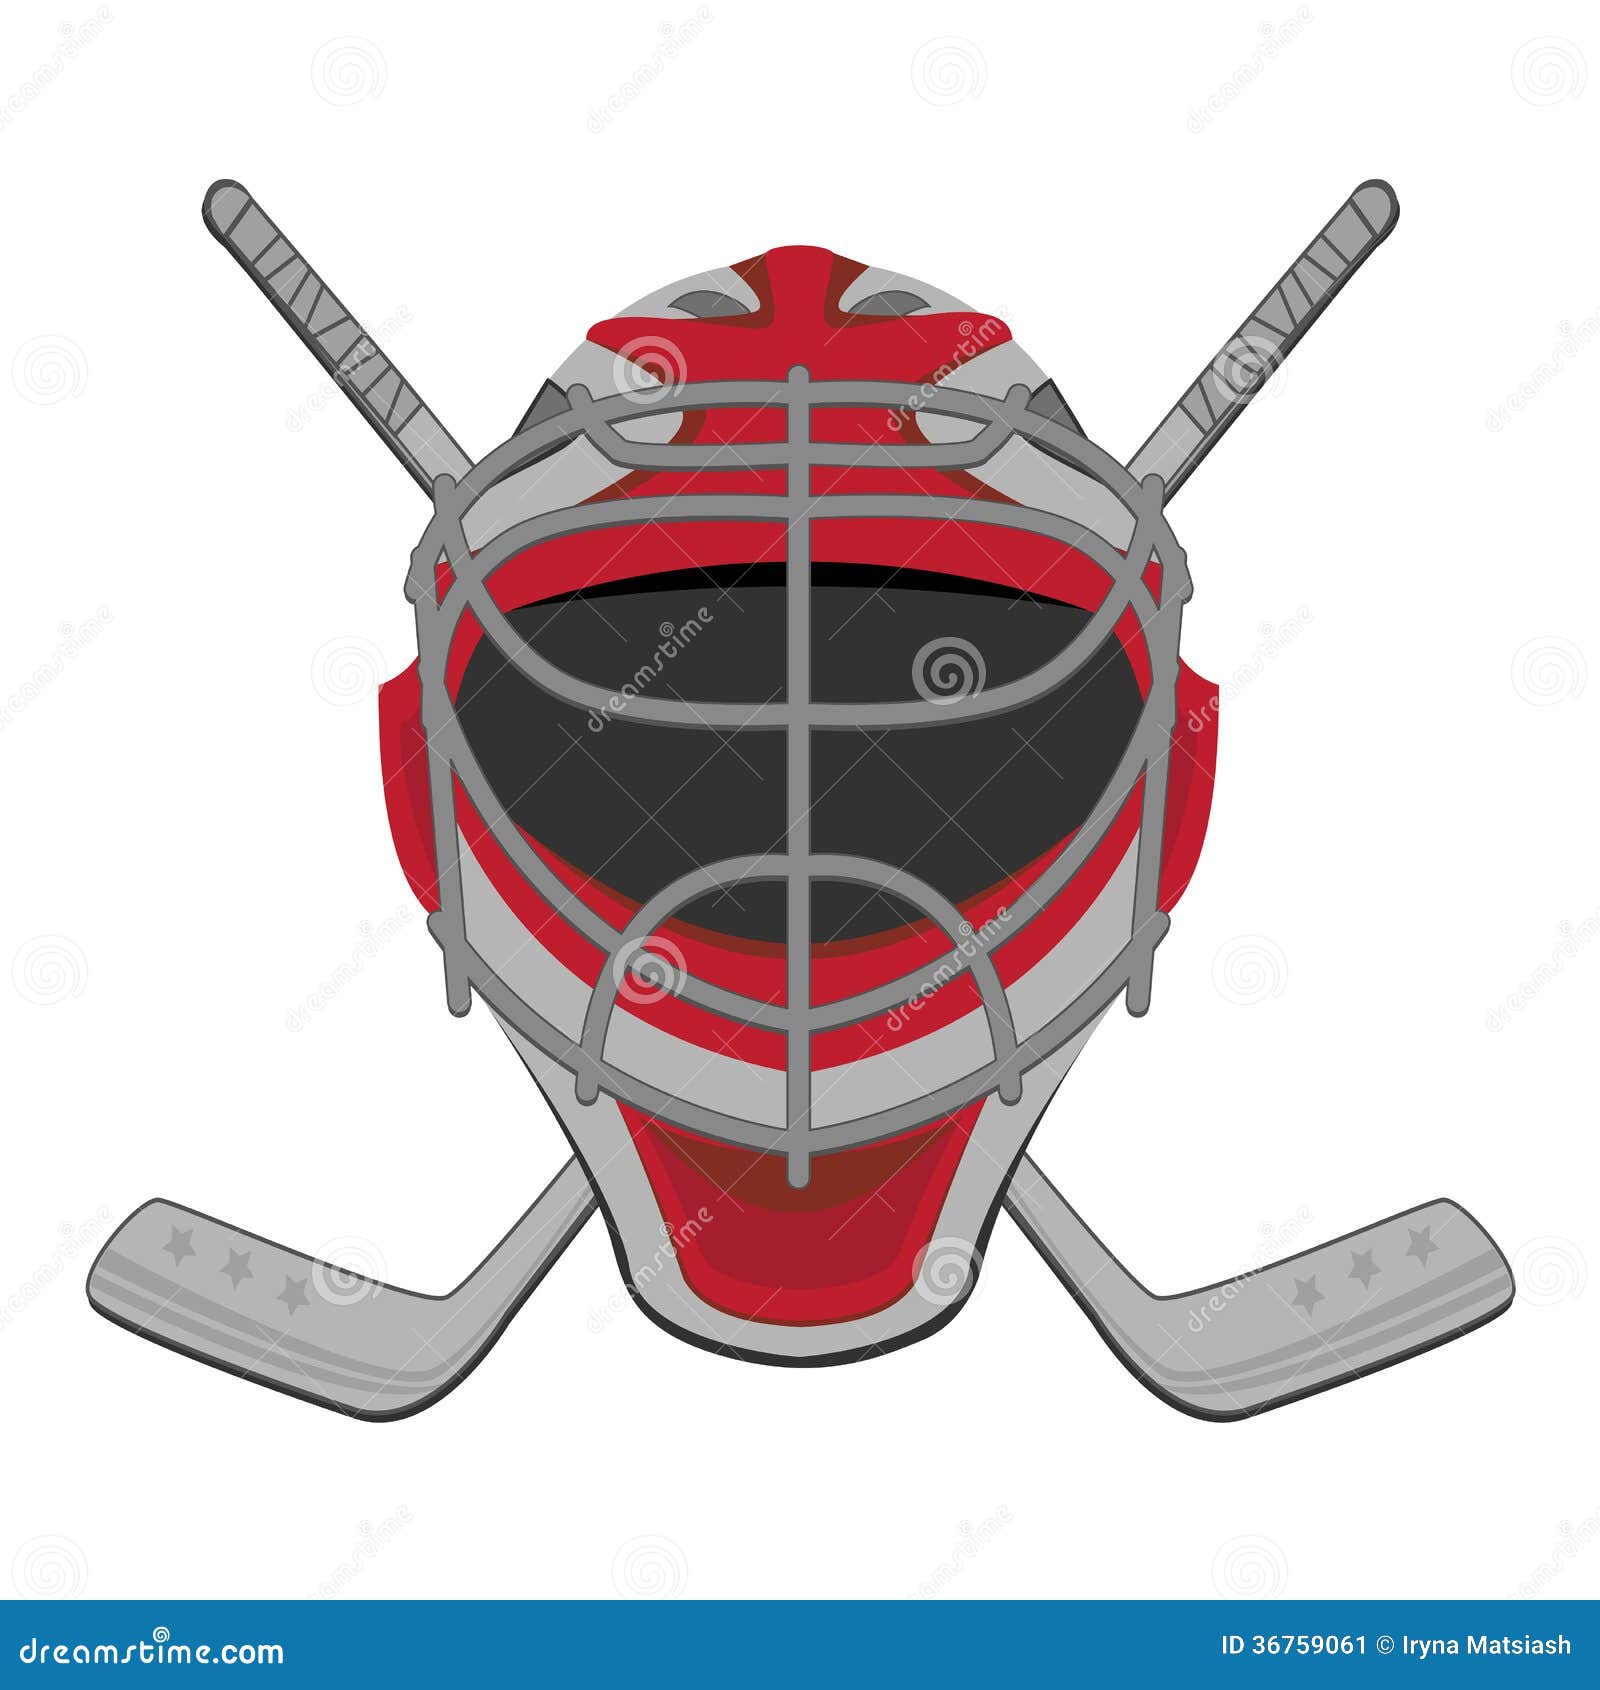 Moose.  Hockey goalie, Goalie, Hockey mask